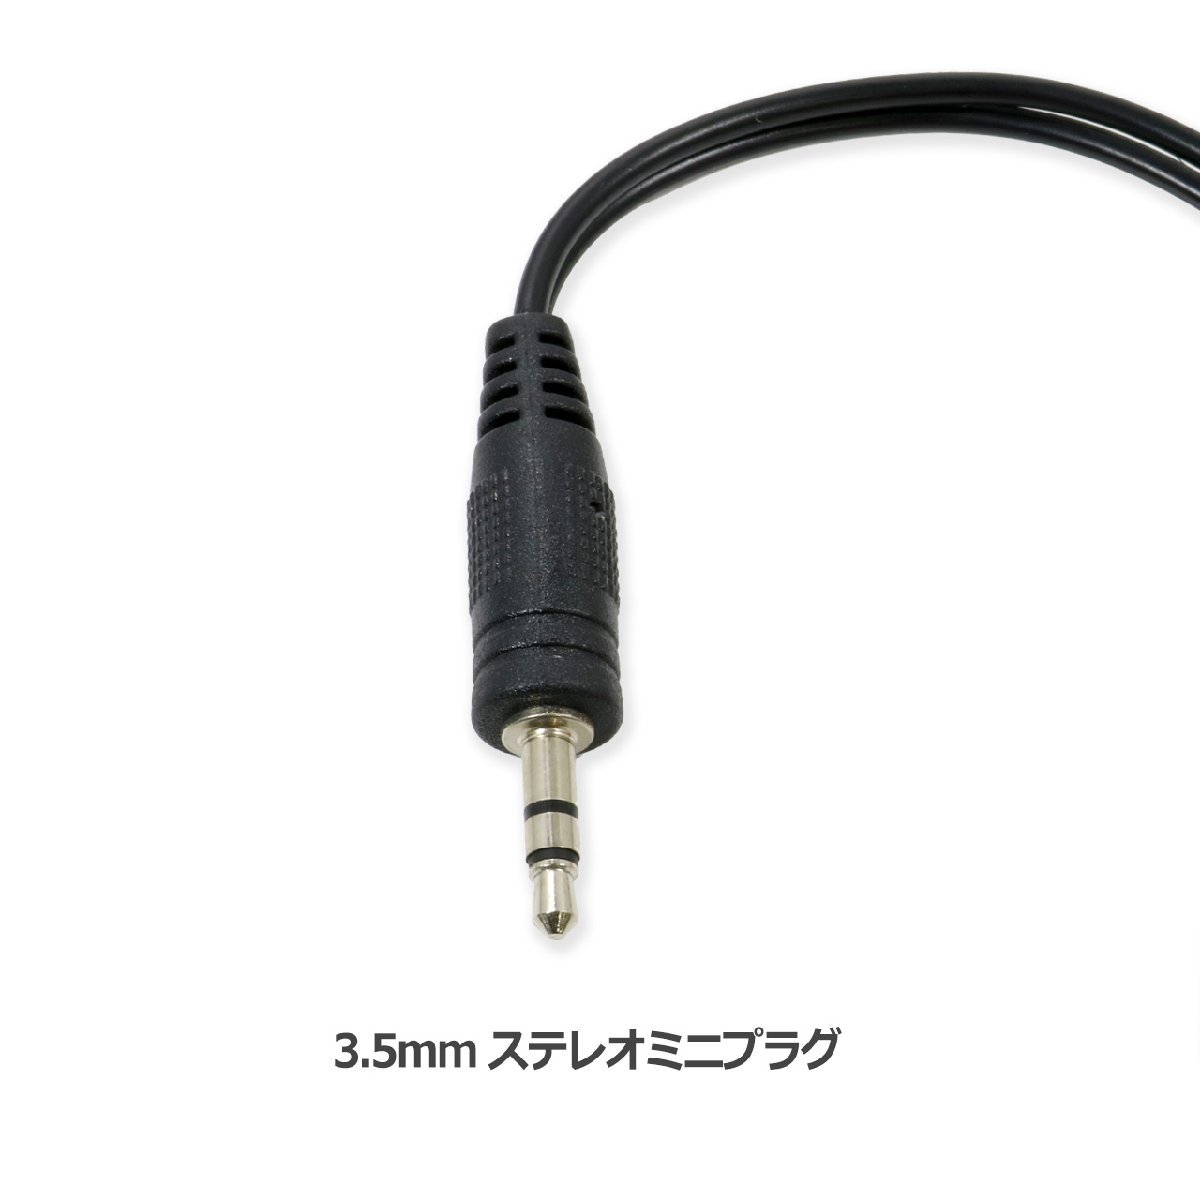 3.5mm ステレオミニプラグ - RCA ピンジャック オーディオ 変換 ケーブル 変換アダプター 10cm_画像2